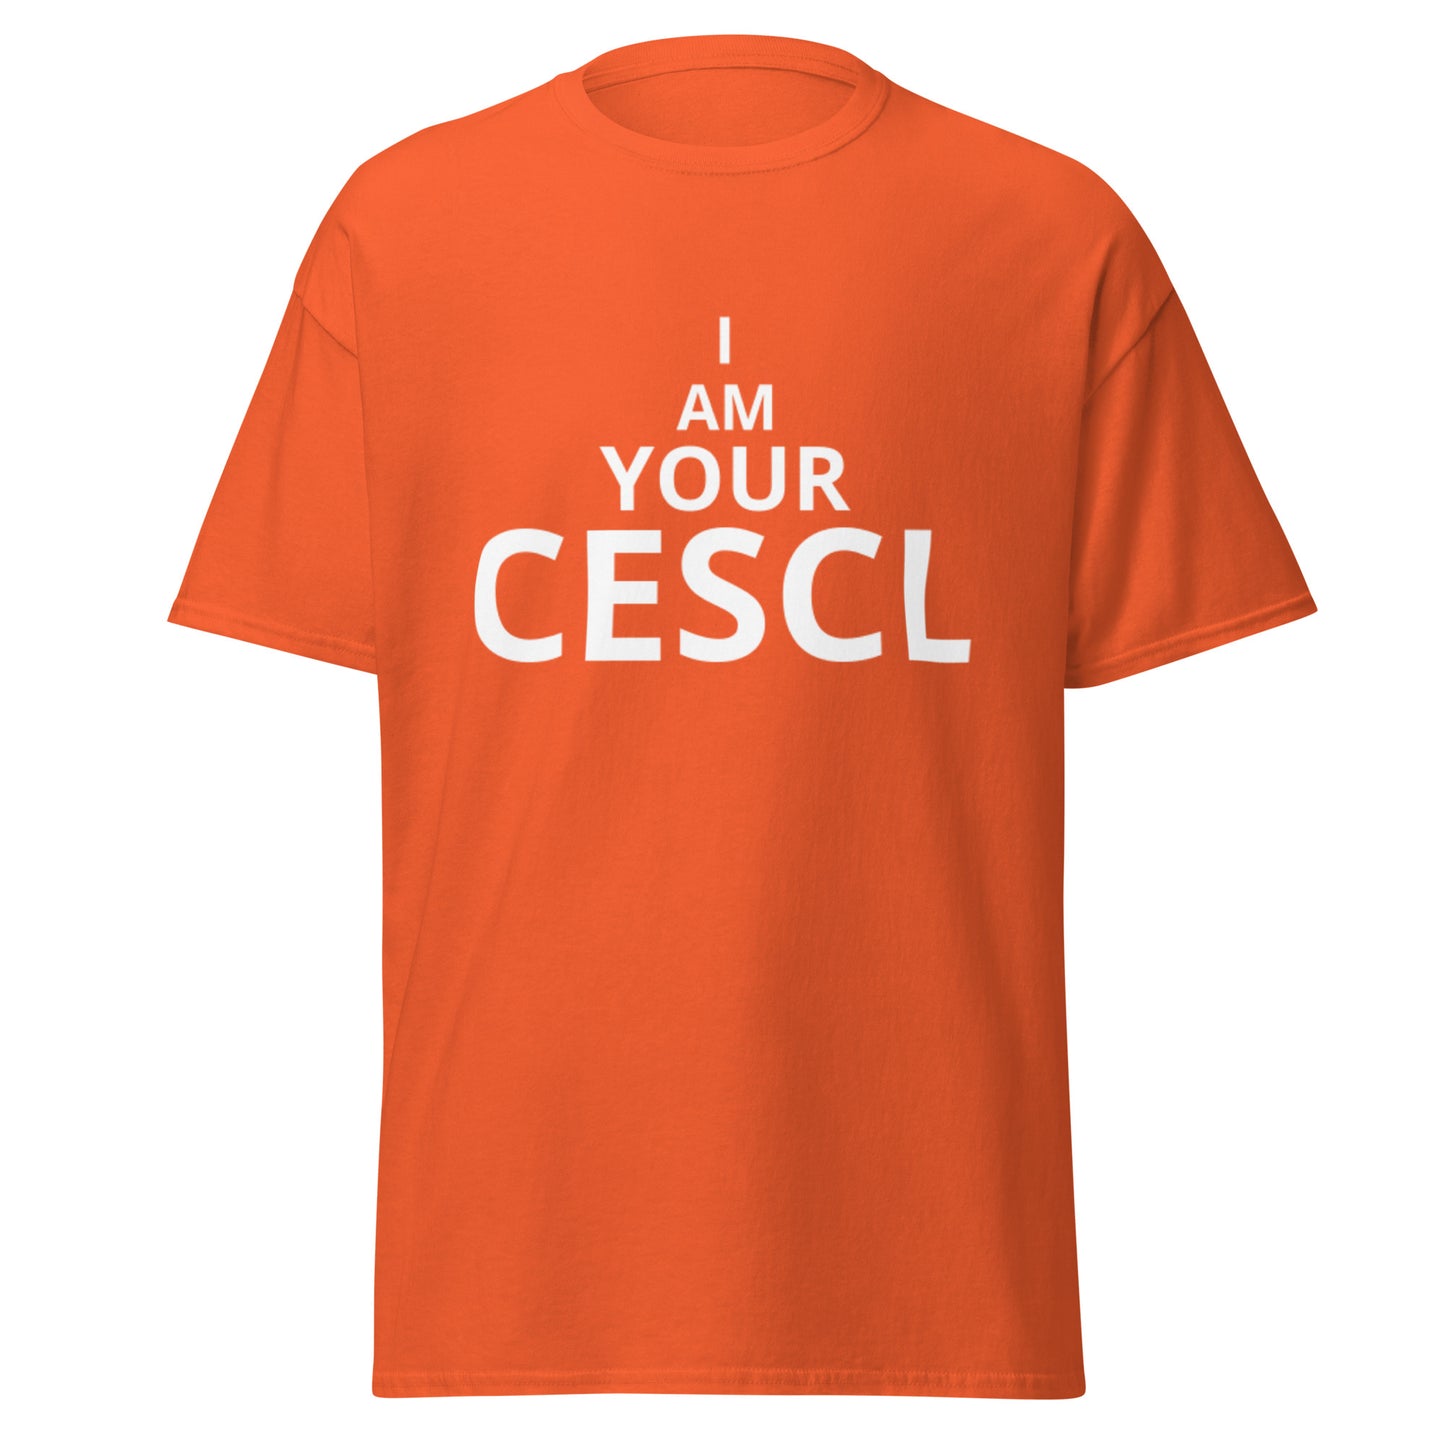 I am your CESCL - Men's classic tee